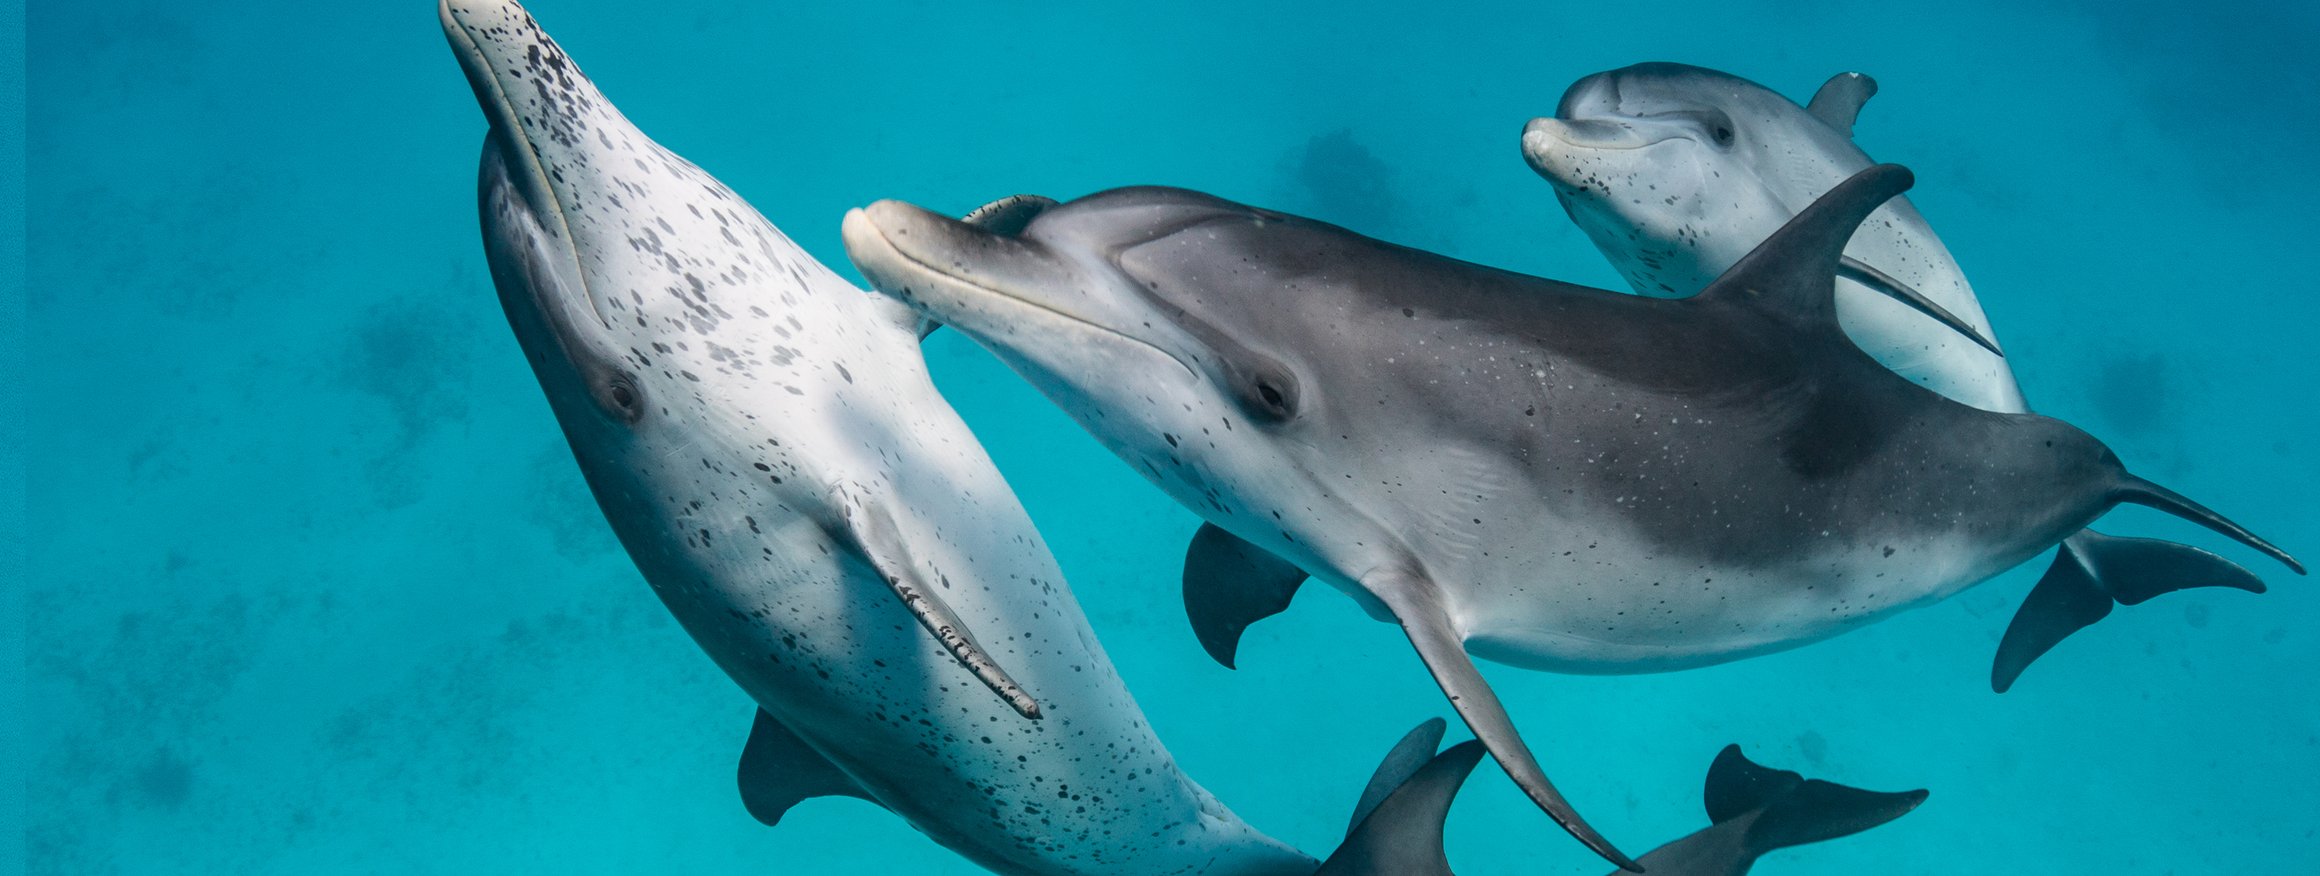 Vier Delfine kooperieren miteinander